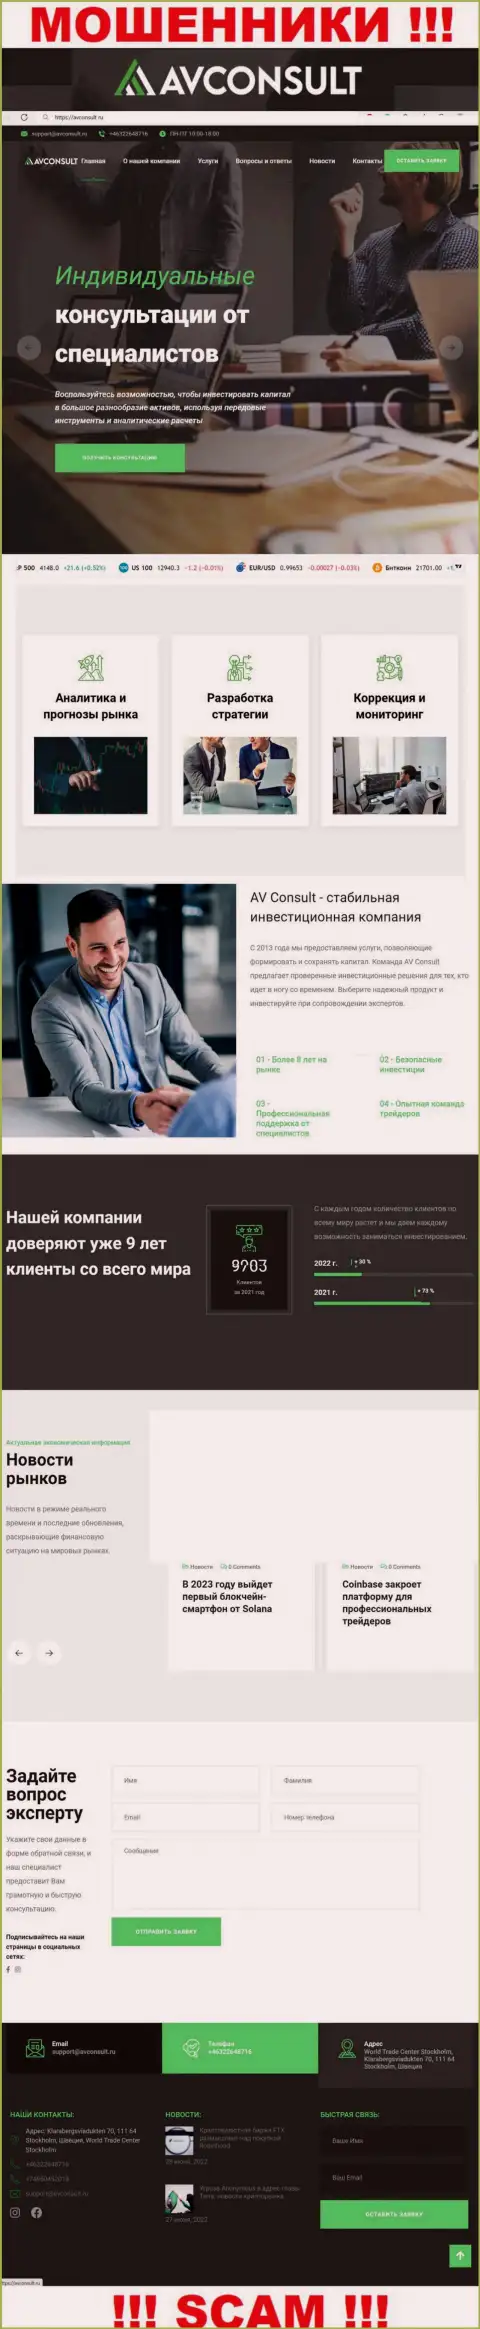 Фейковая информация от конторы АВКонсульт на официальном web-сервисе мошенников